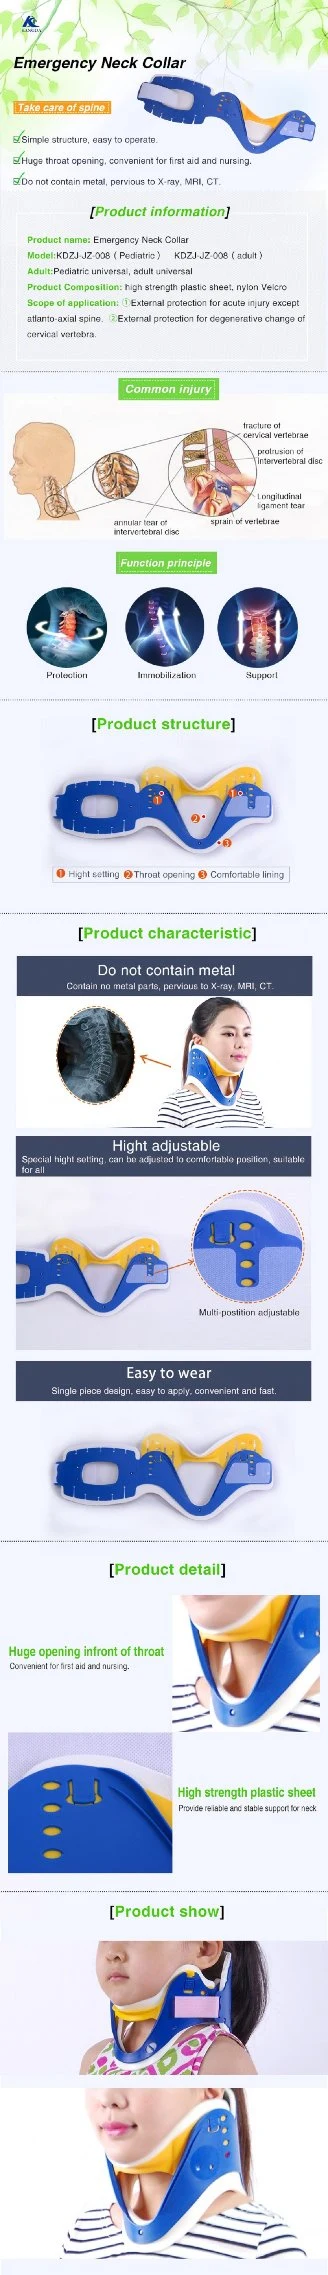 Adjustable Cervical Collar, Medical Neck Collar